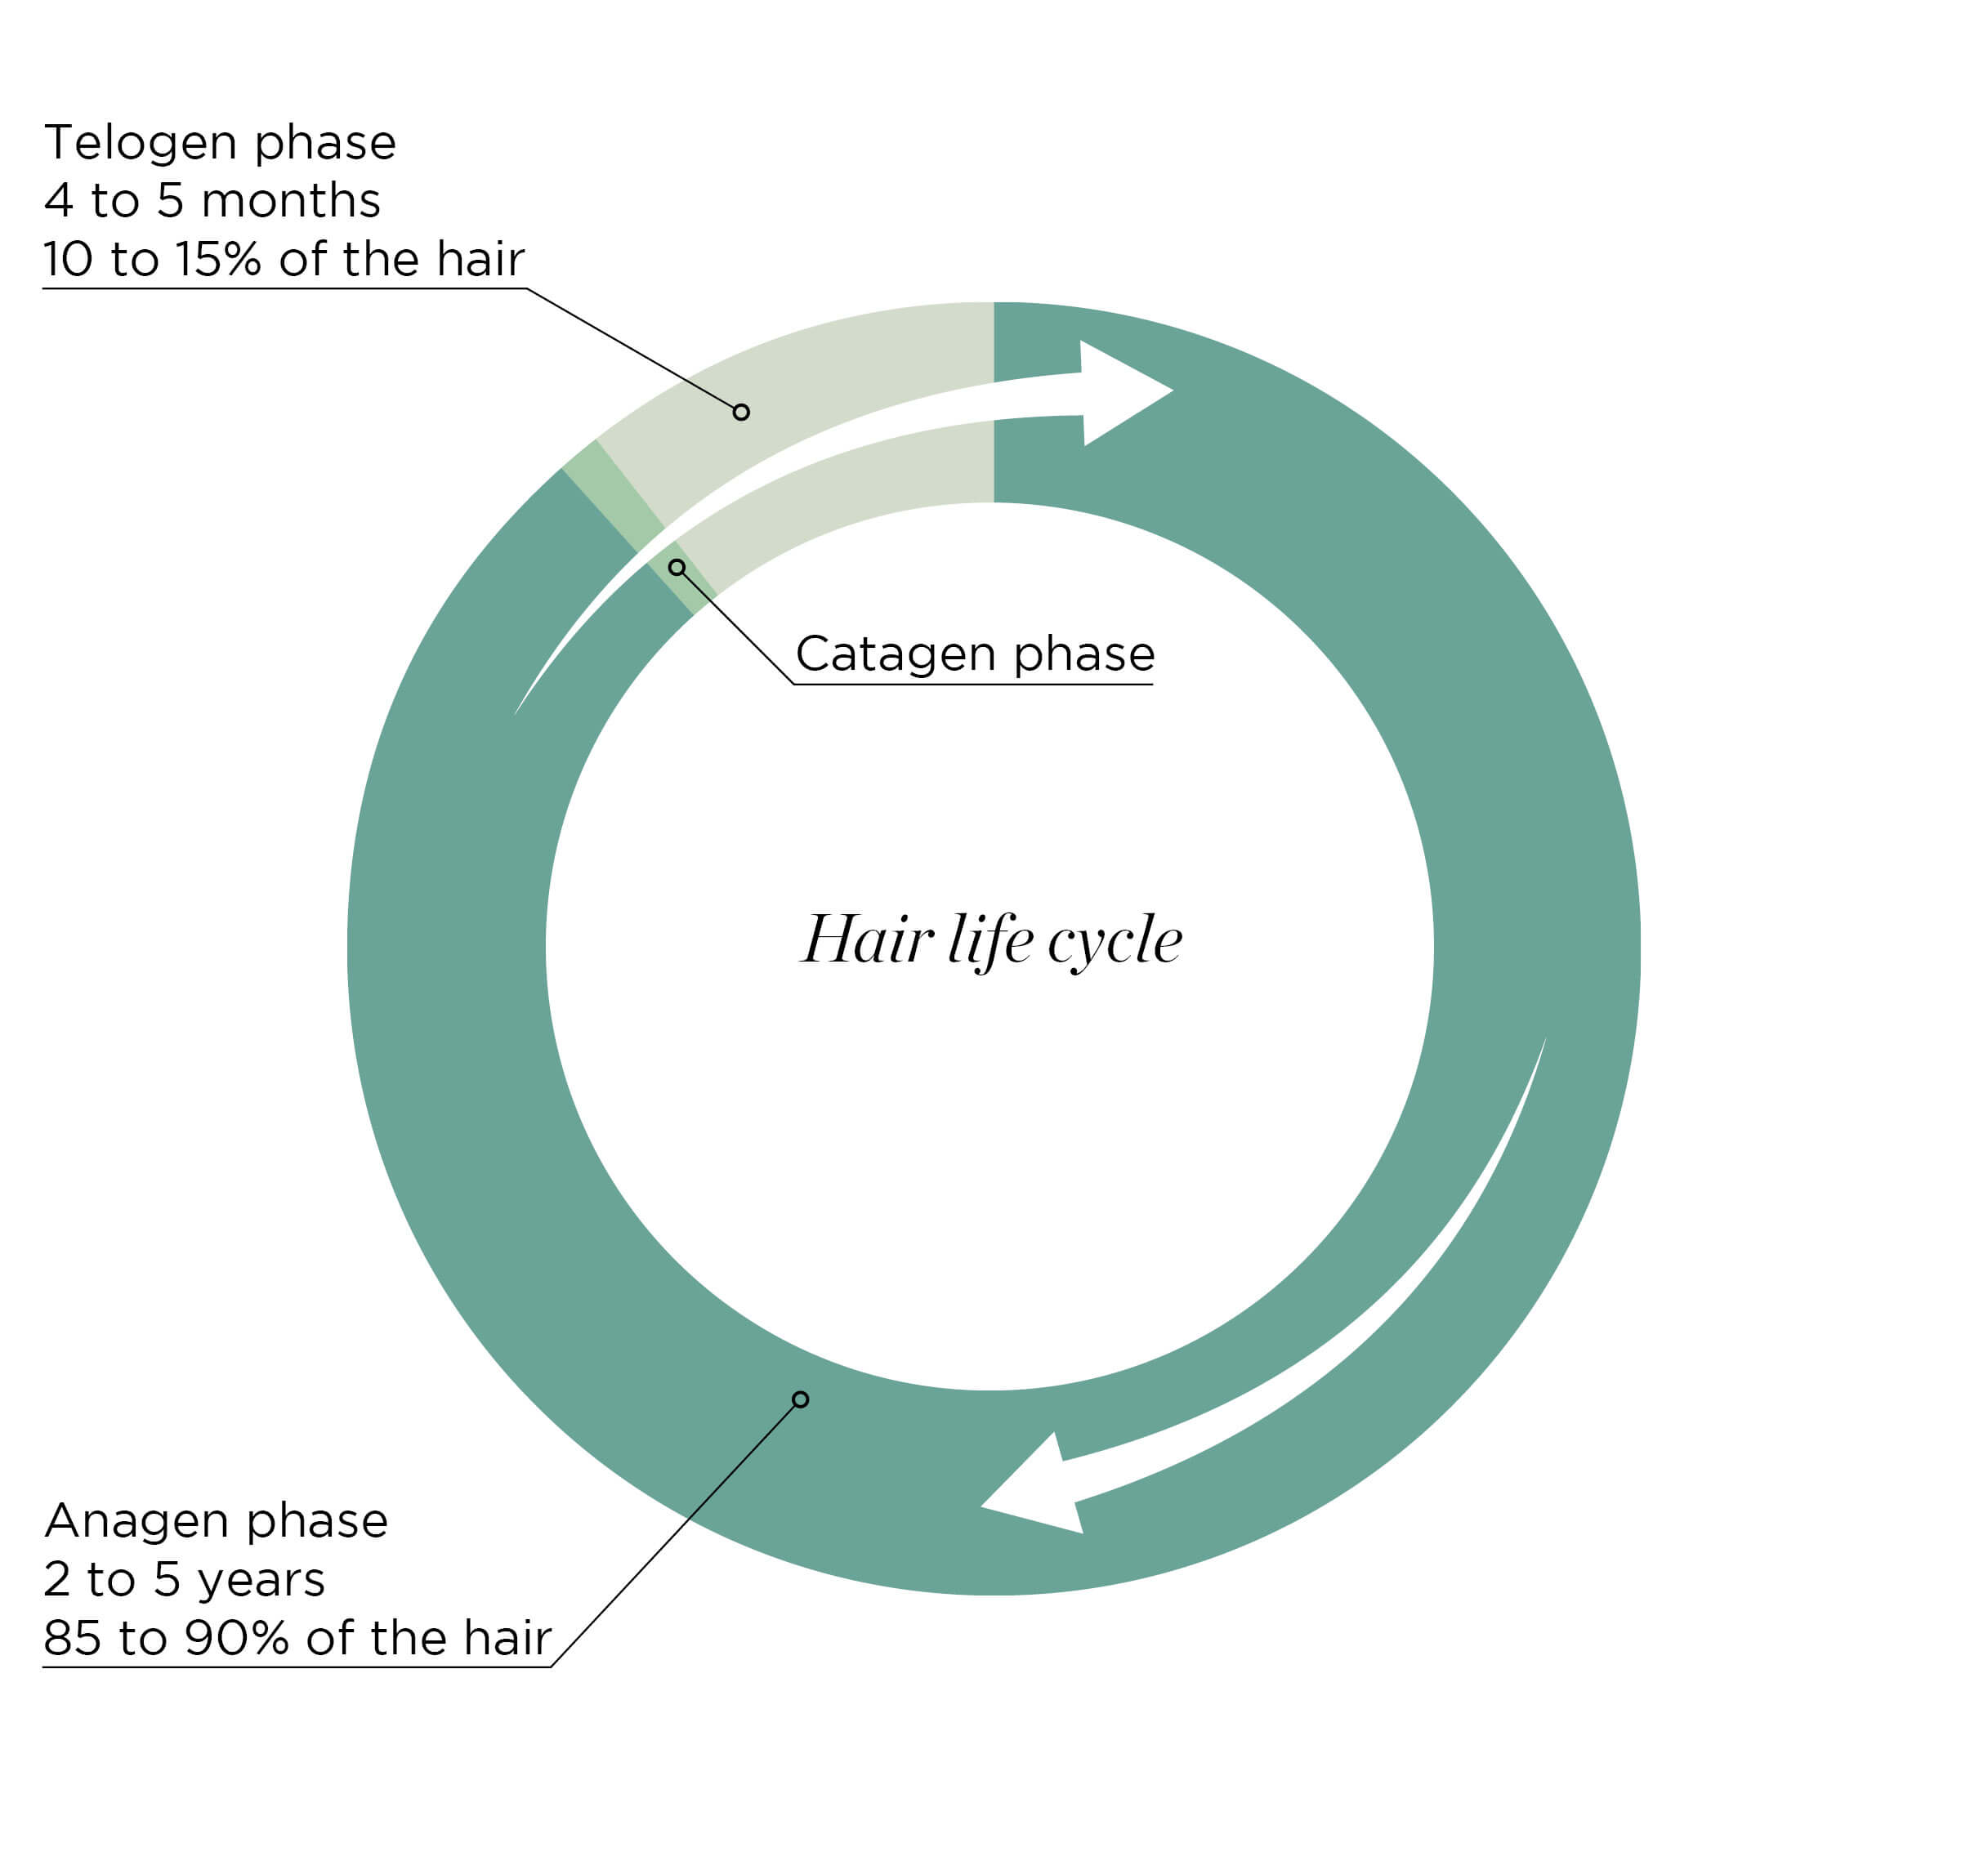 Le cycle du cheveu - Keranat™ - Diminuer la chute de cheveux